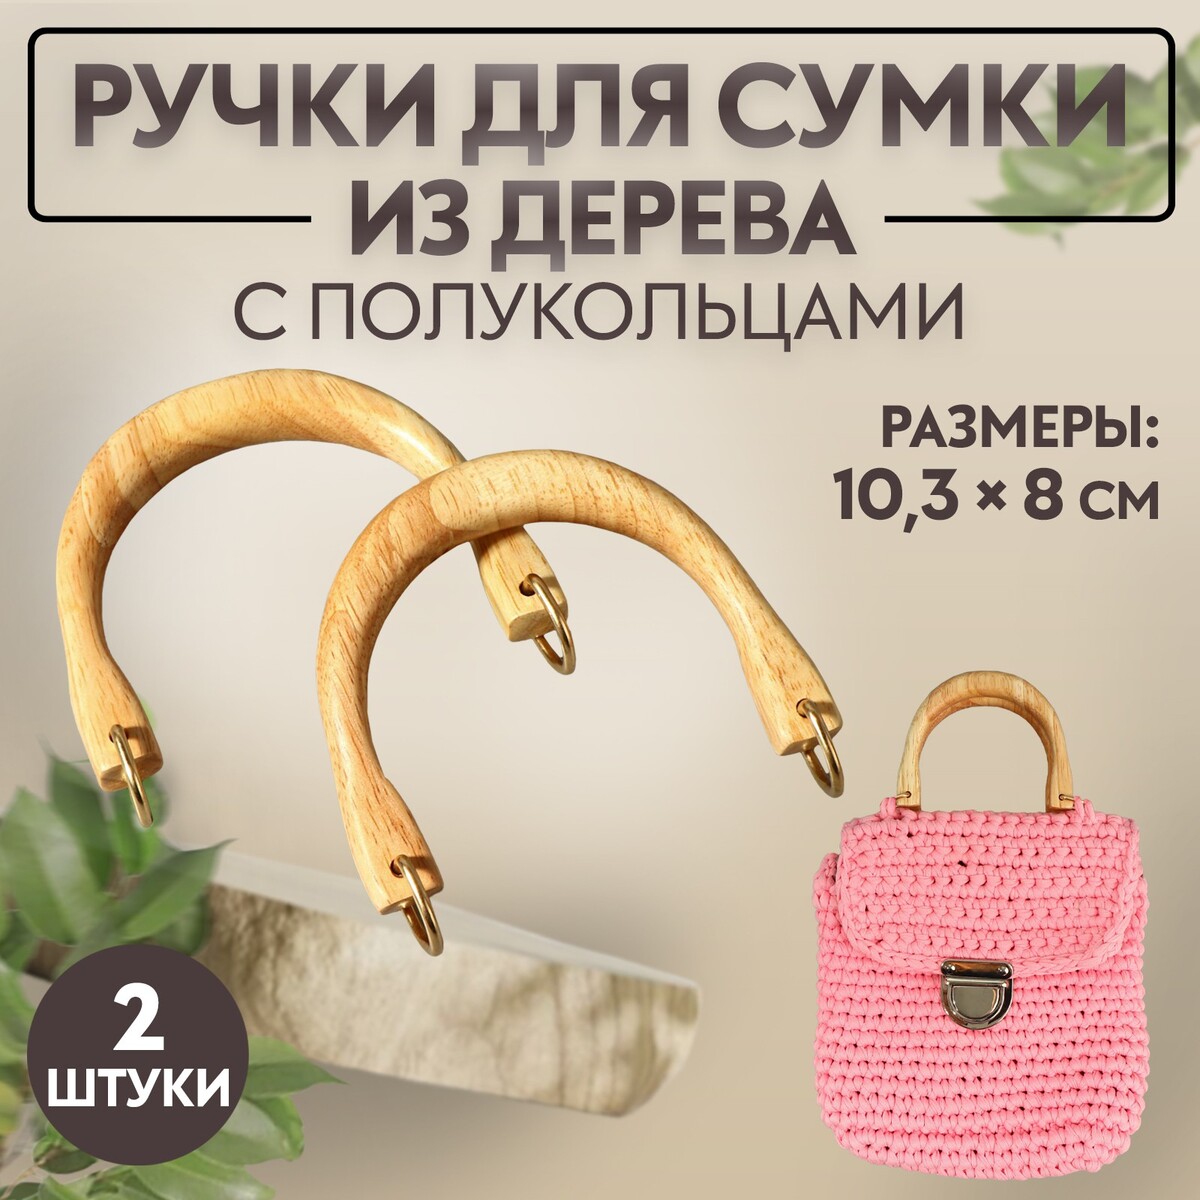 Ручки для сумки деревянные, с полукольцами, 10,3 × 8 см, 2 шт, цвет бежевый/золотой ручка для сумки бамбук с полукольцами 13 5 × 10 5 см бежевый золотой